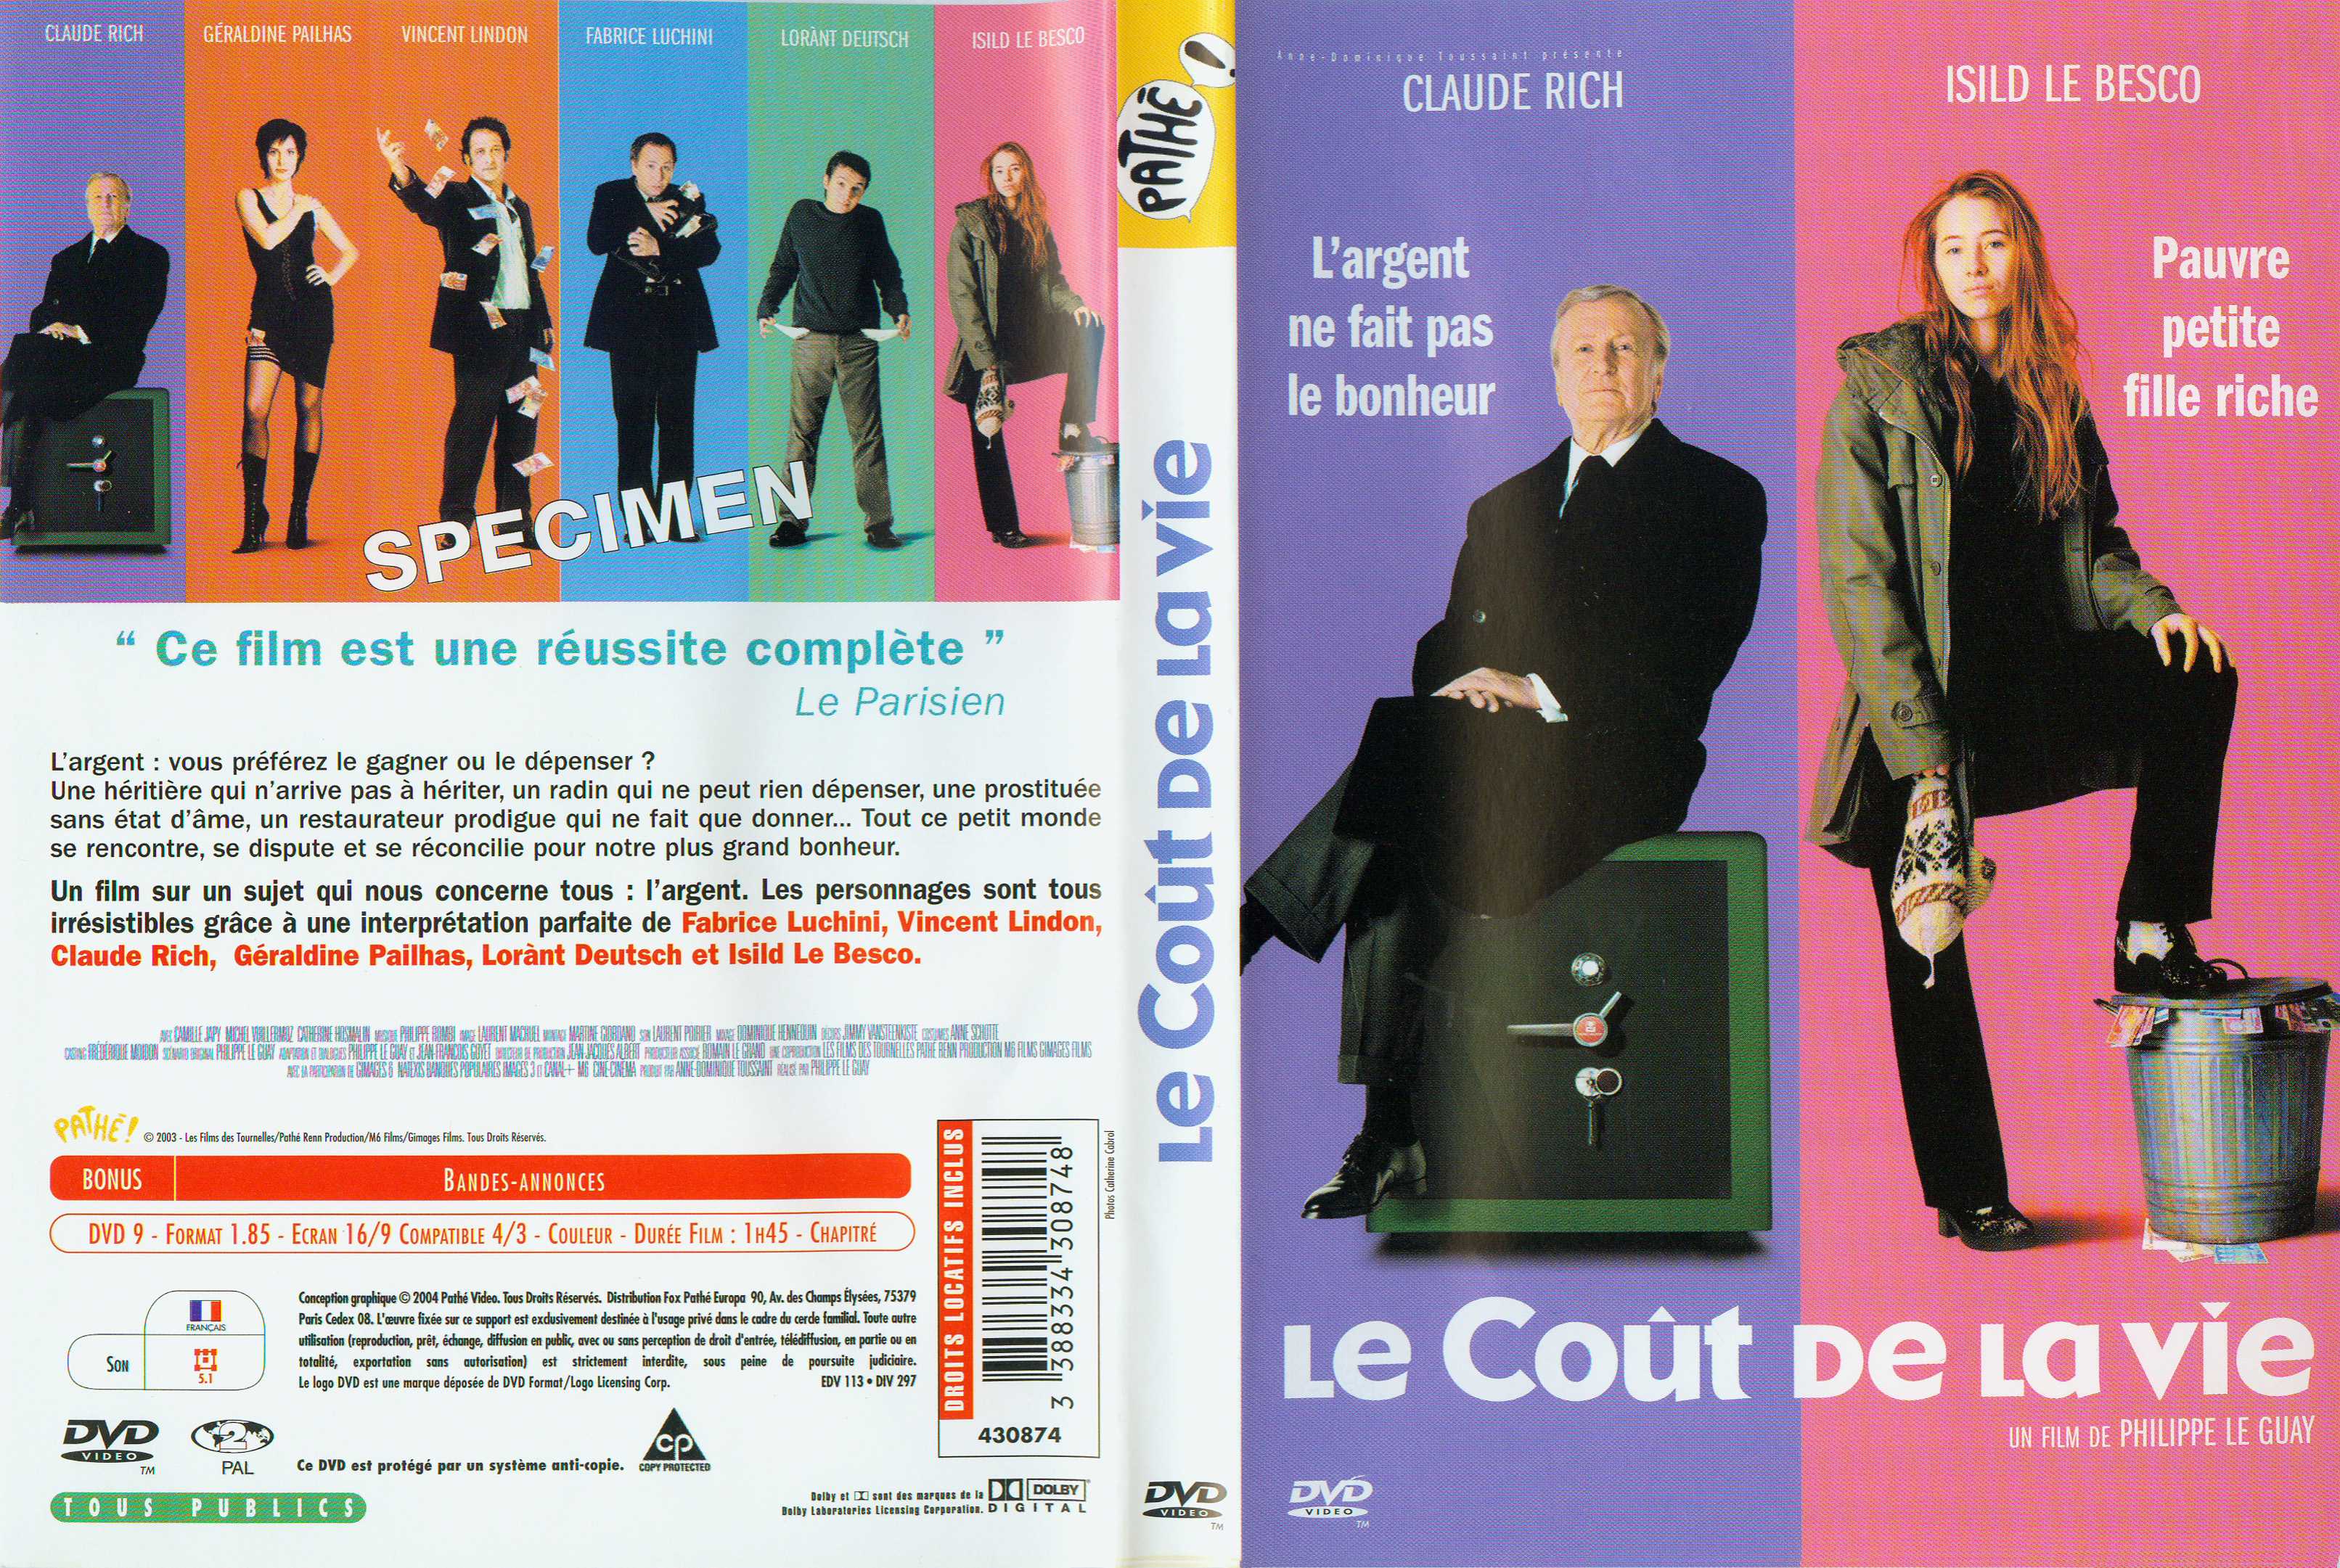 Jaquette DVD Le cout de la vie